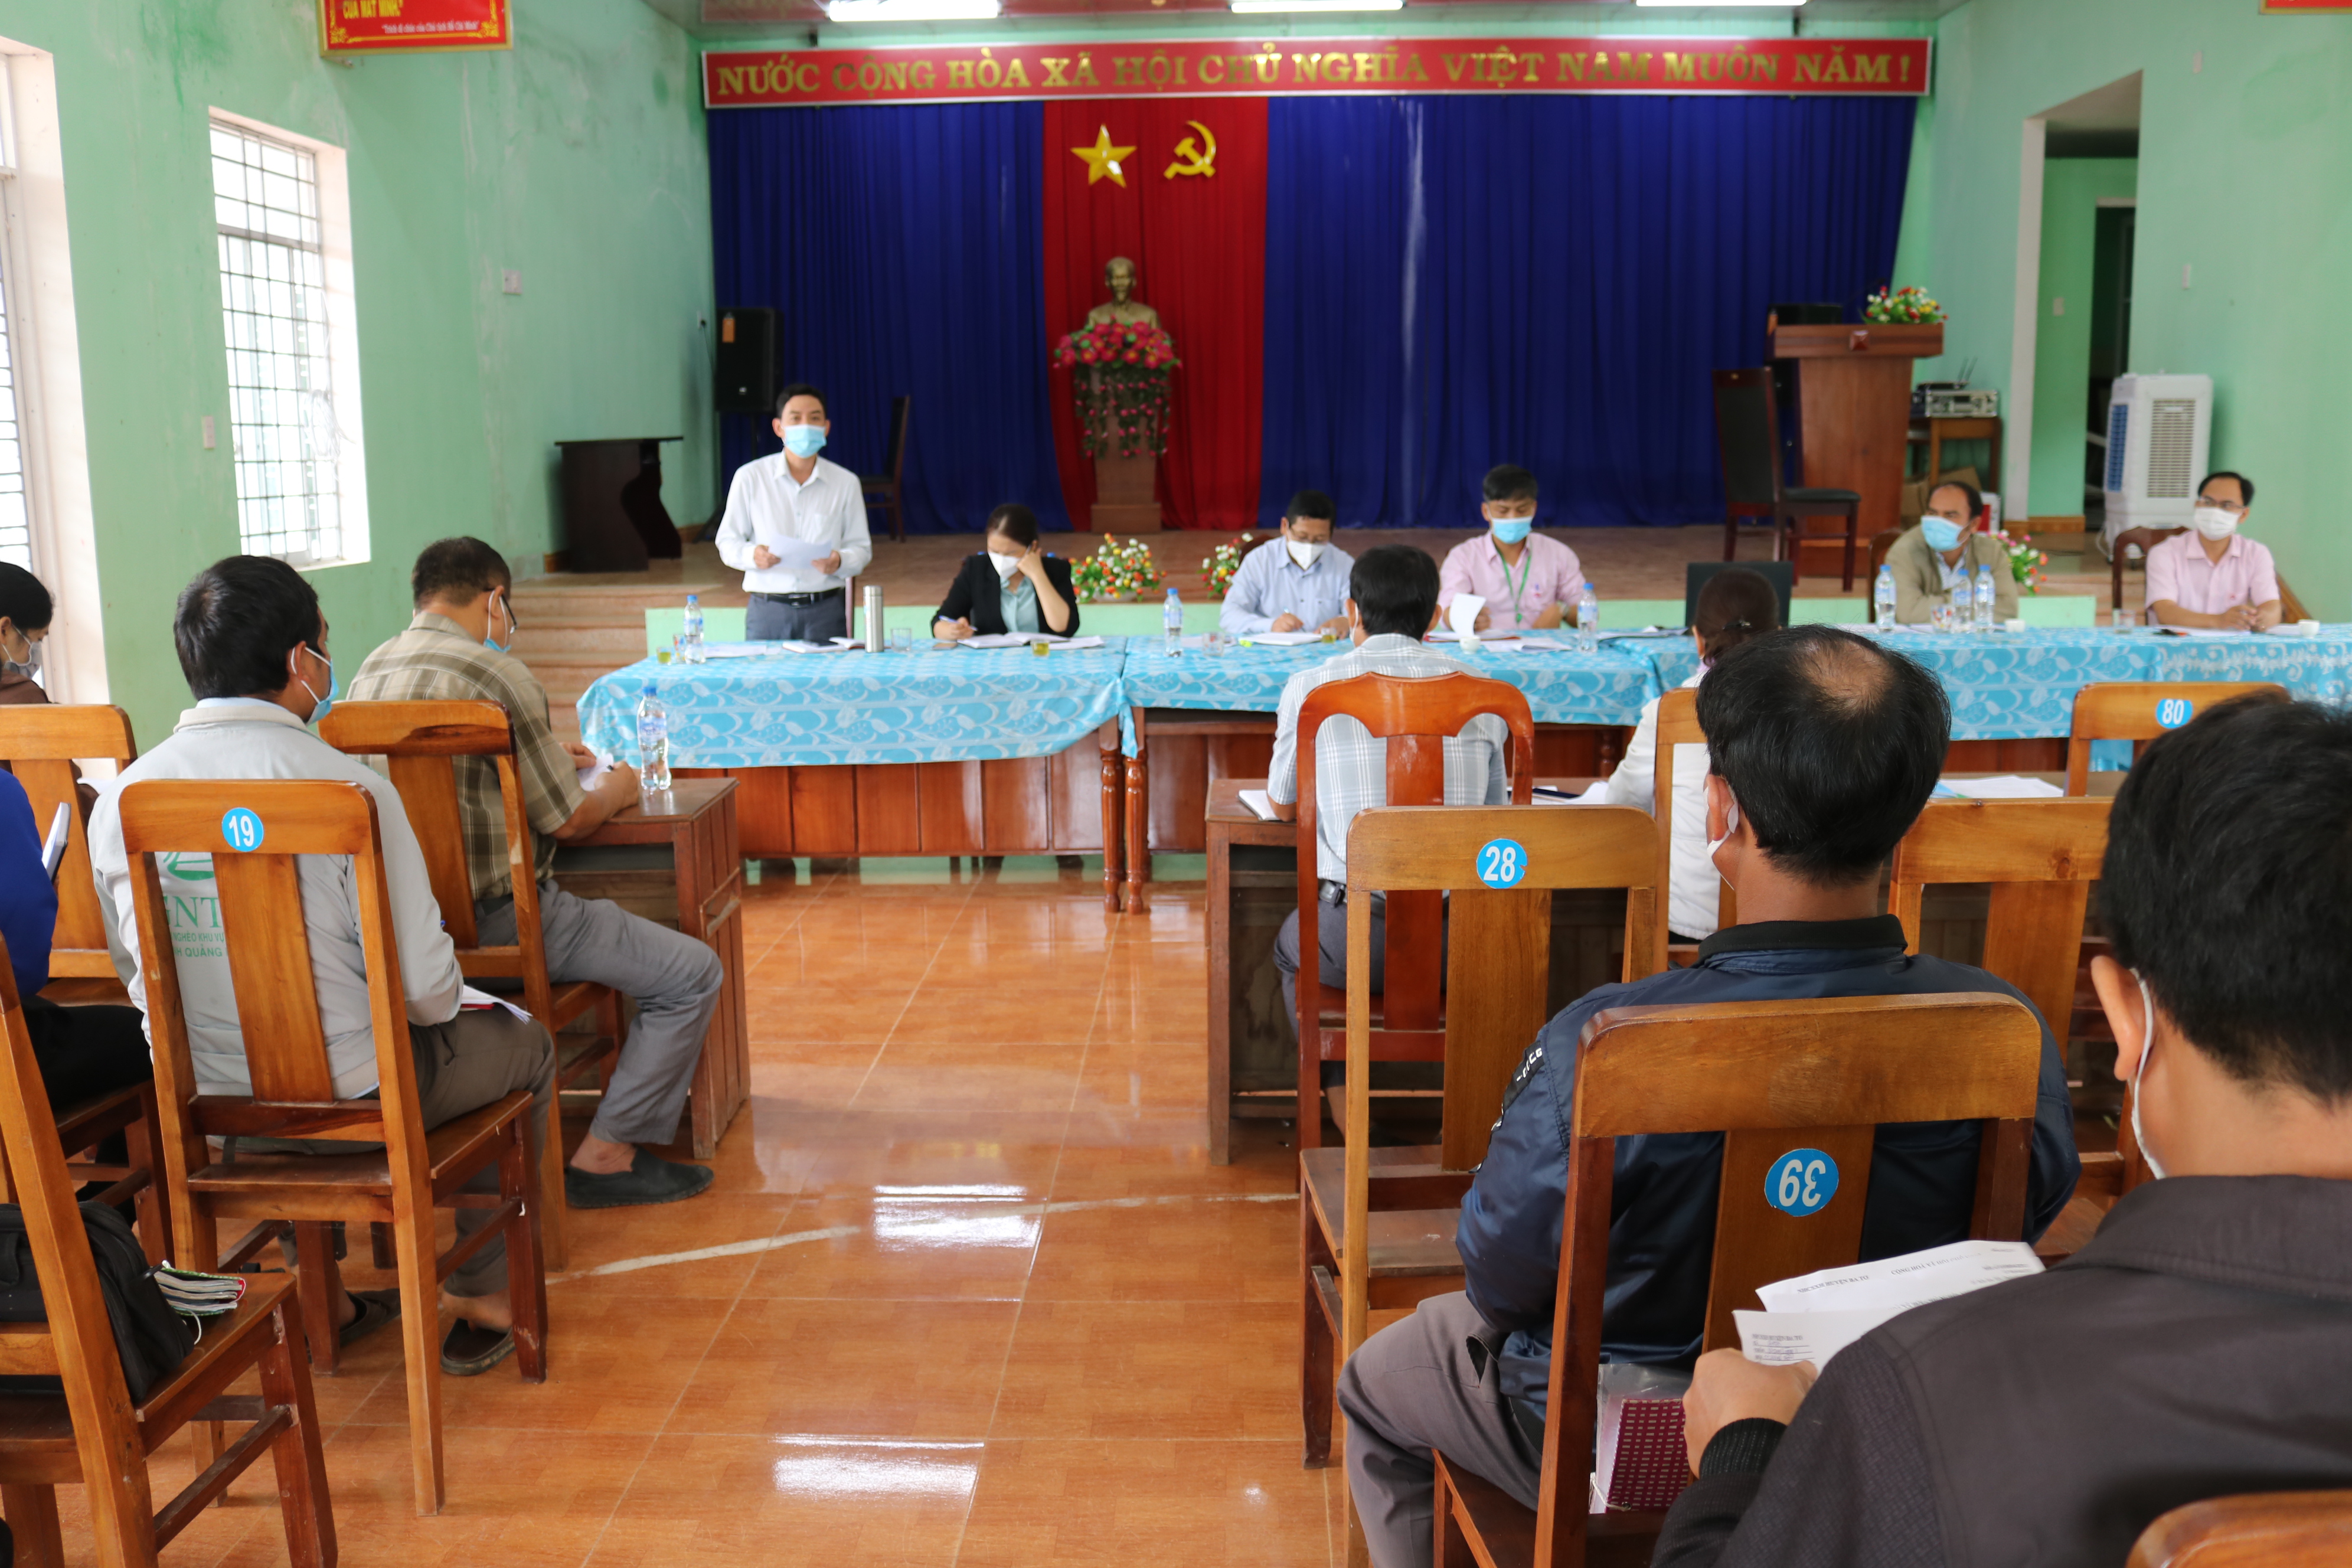 Đồng chí Lữ Đình Tích - Phó Chủ tịch UBND huyện làm việc tại UBND xã Ba Tô về các chương trình tín dụng chính sách ưu đãi